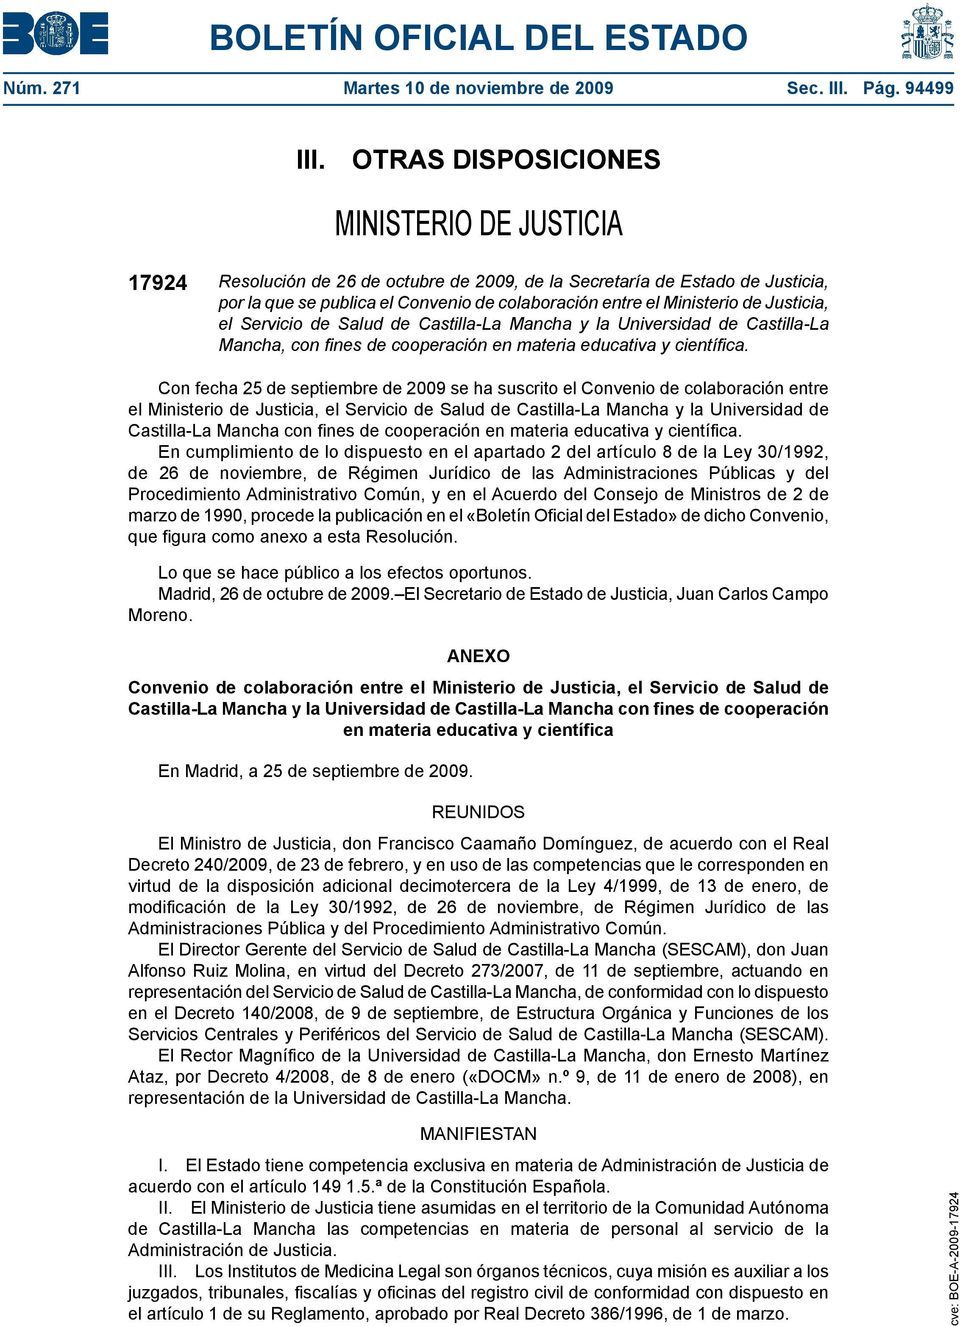 Justicia, el Servicio de Salud de Castilla-La Mancha y la Universidad de Castilla-La Mancha, con fines de cooperación en materia educativa y científica.